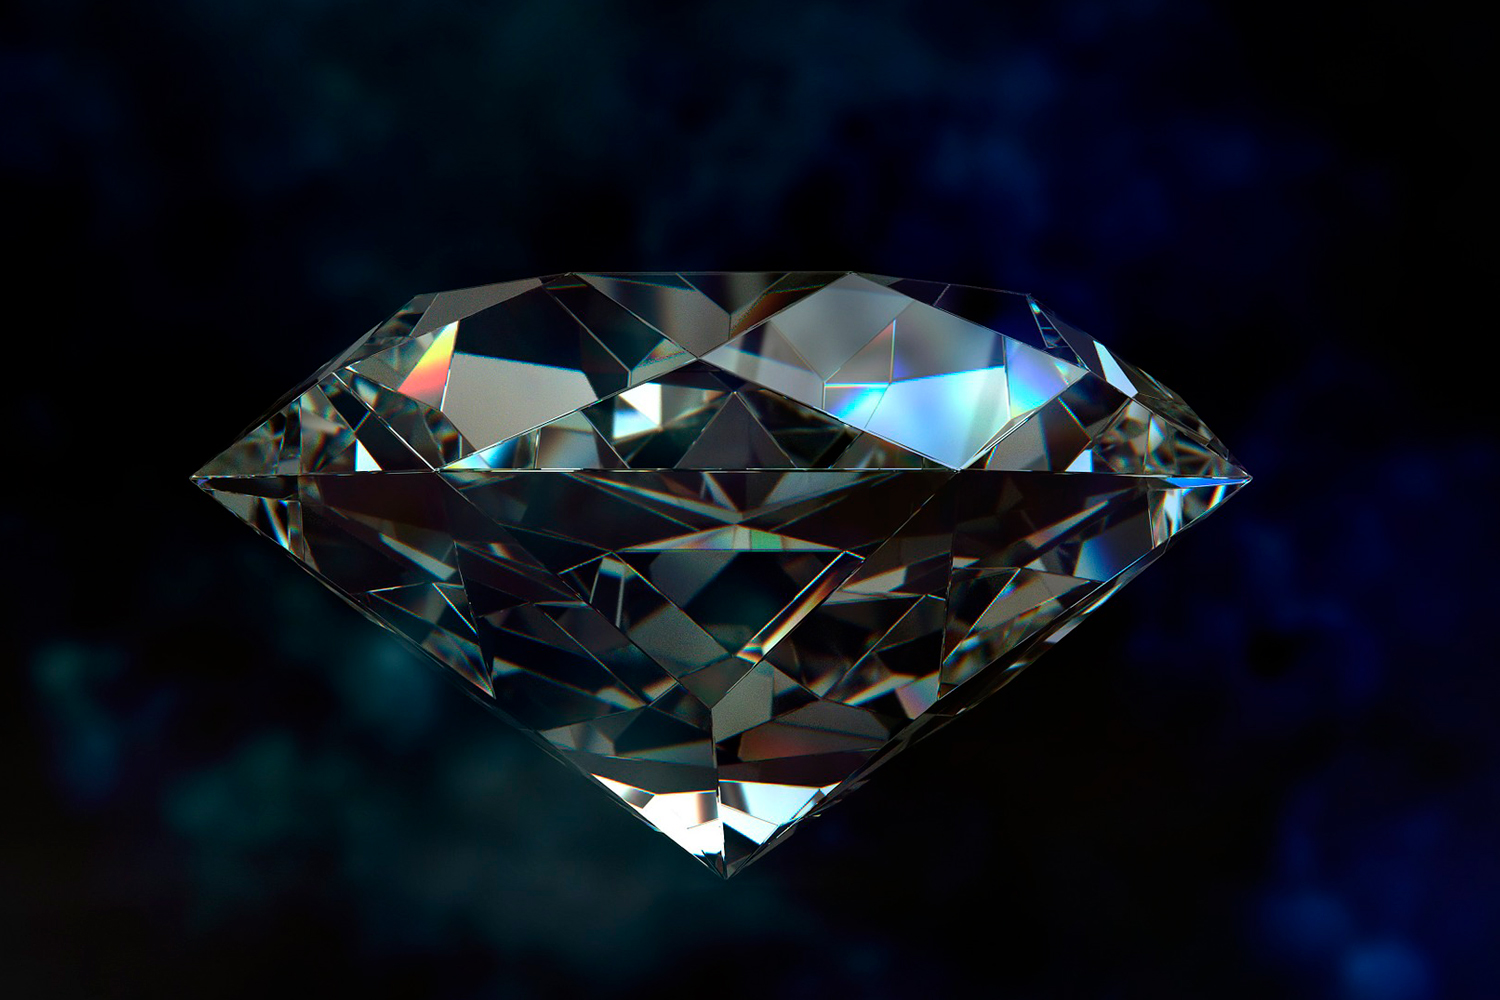 ウィッテルスバハ・ダイヤは過去最高の20億円で落札されるほどの価値がある